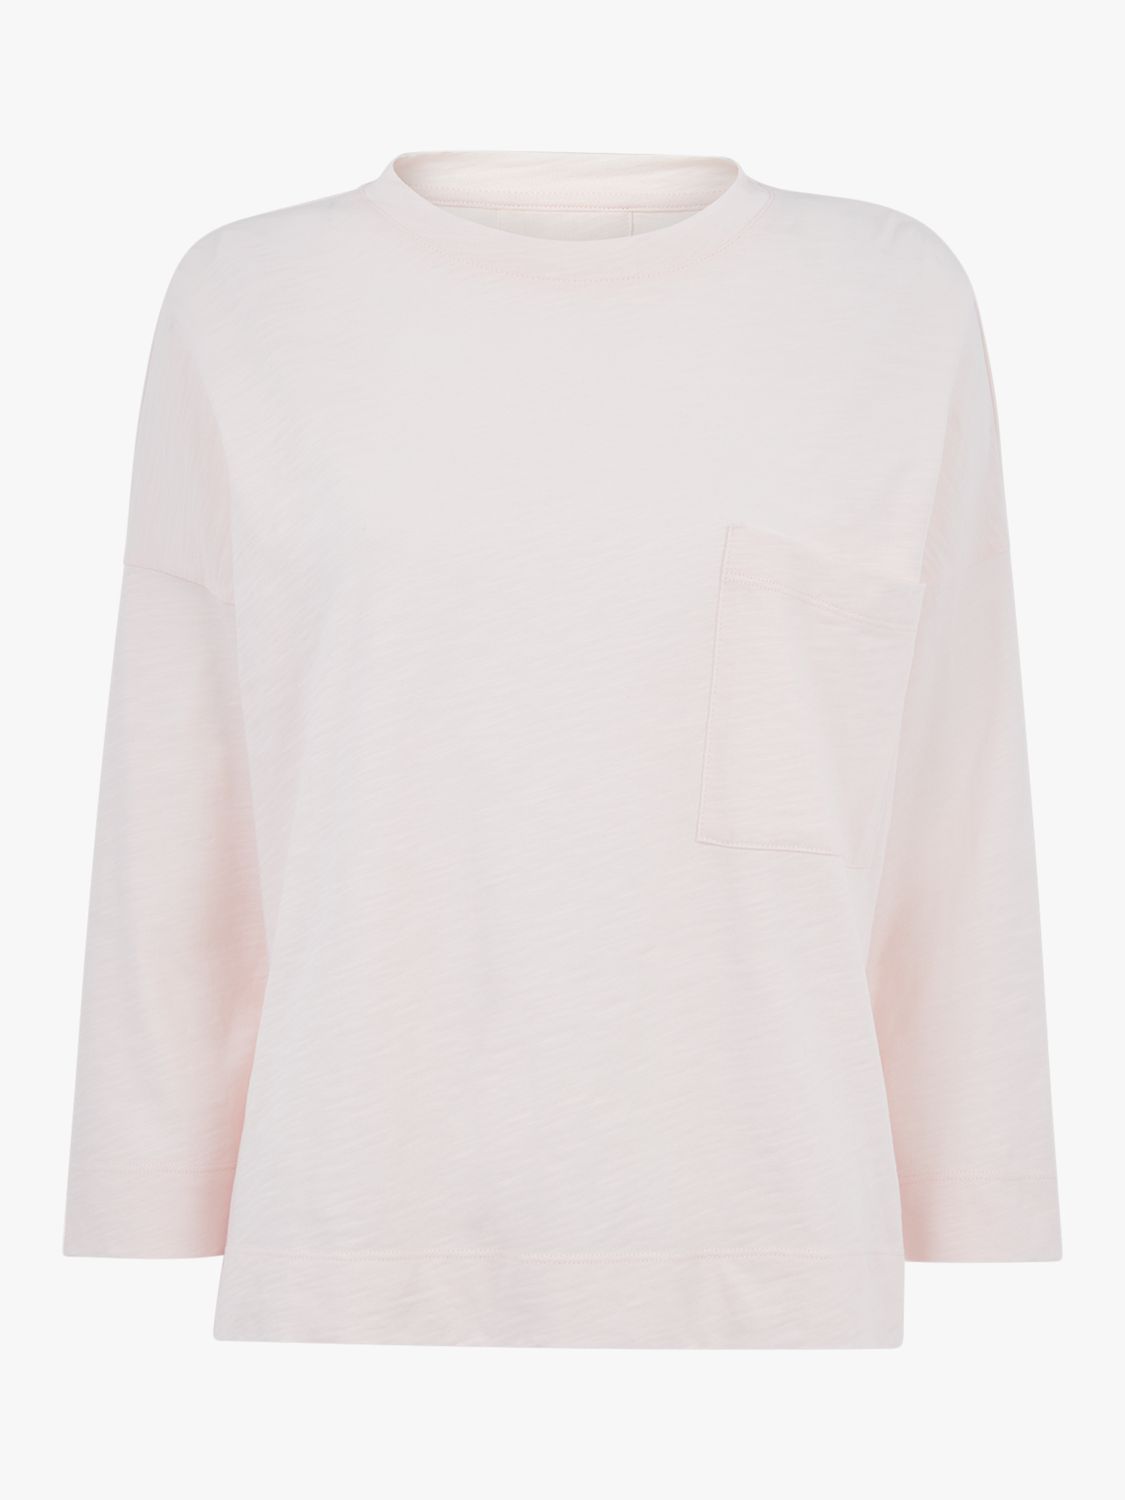 Whistles Organic Cotton Patch Pocket T-Shirt, Pale Pink at John Lewis ...